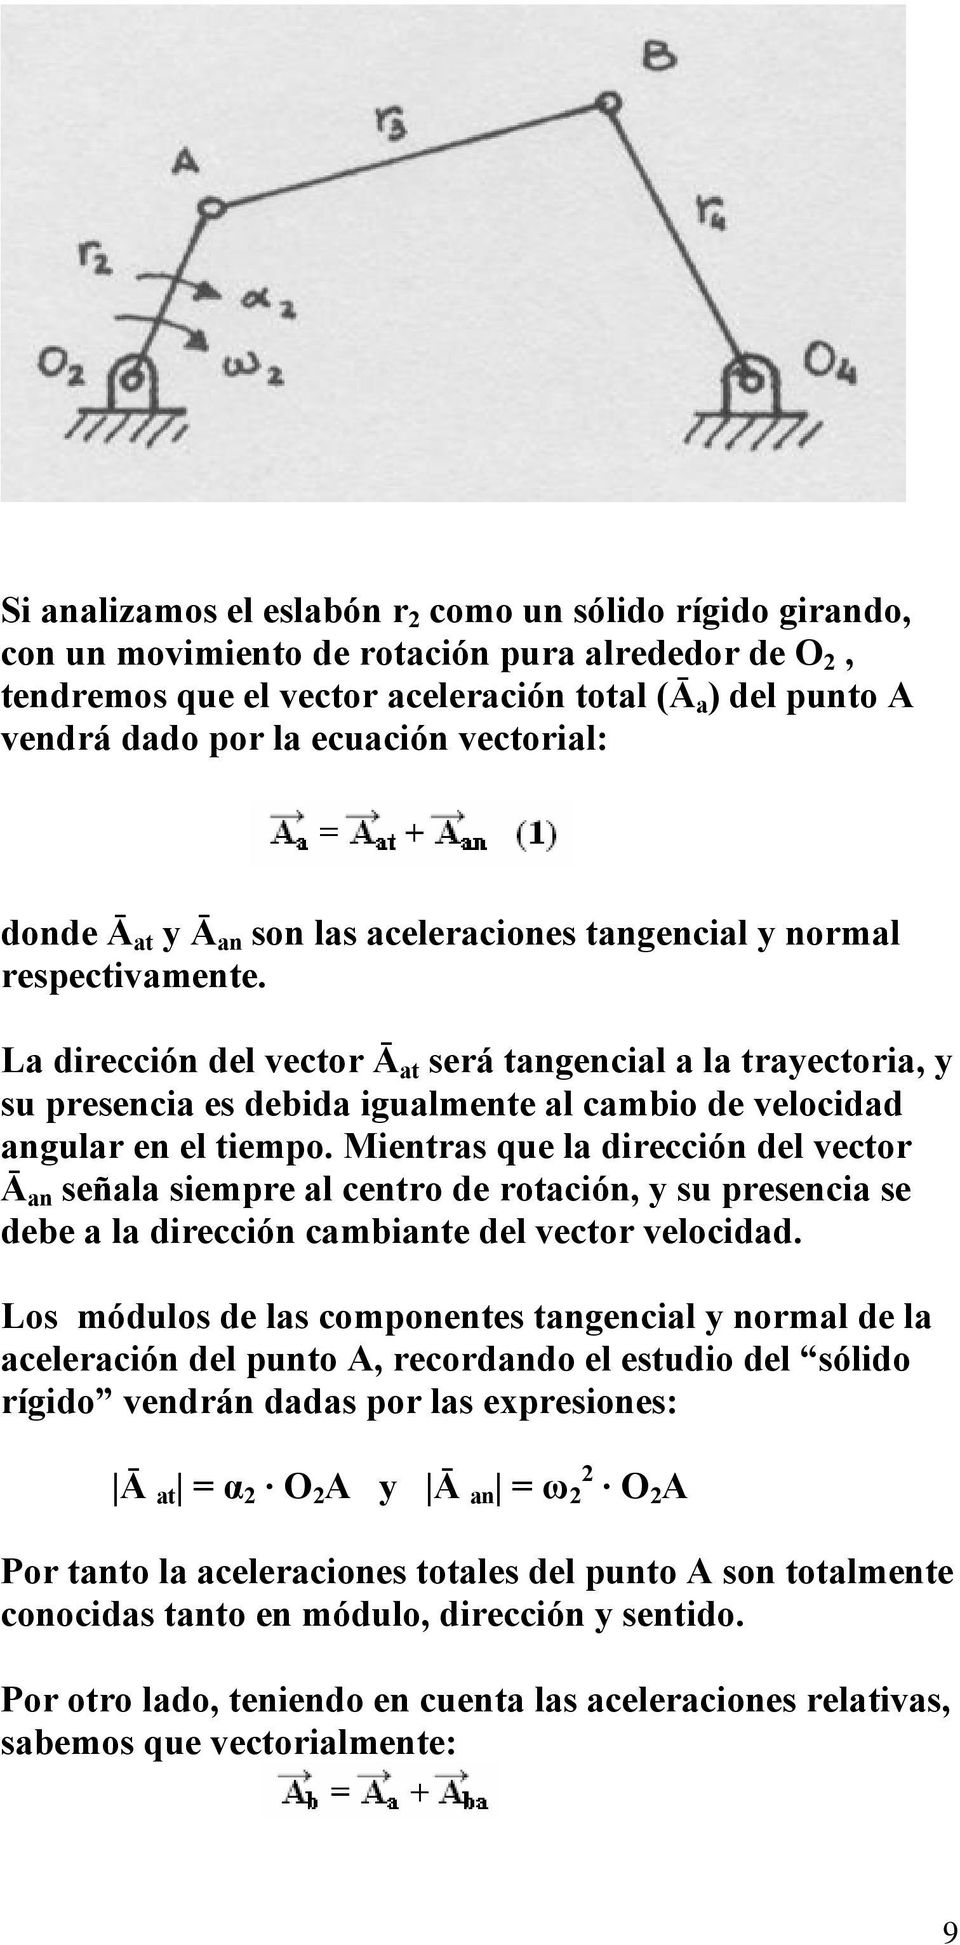 La dirección del vector Ā at será tangencial a la trayectoria, y su presencia es debida igualmente al cambio de velocidad angular en el tiempo.